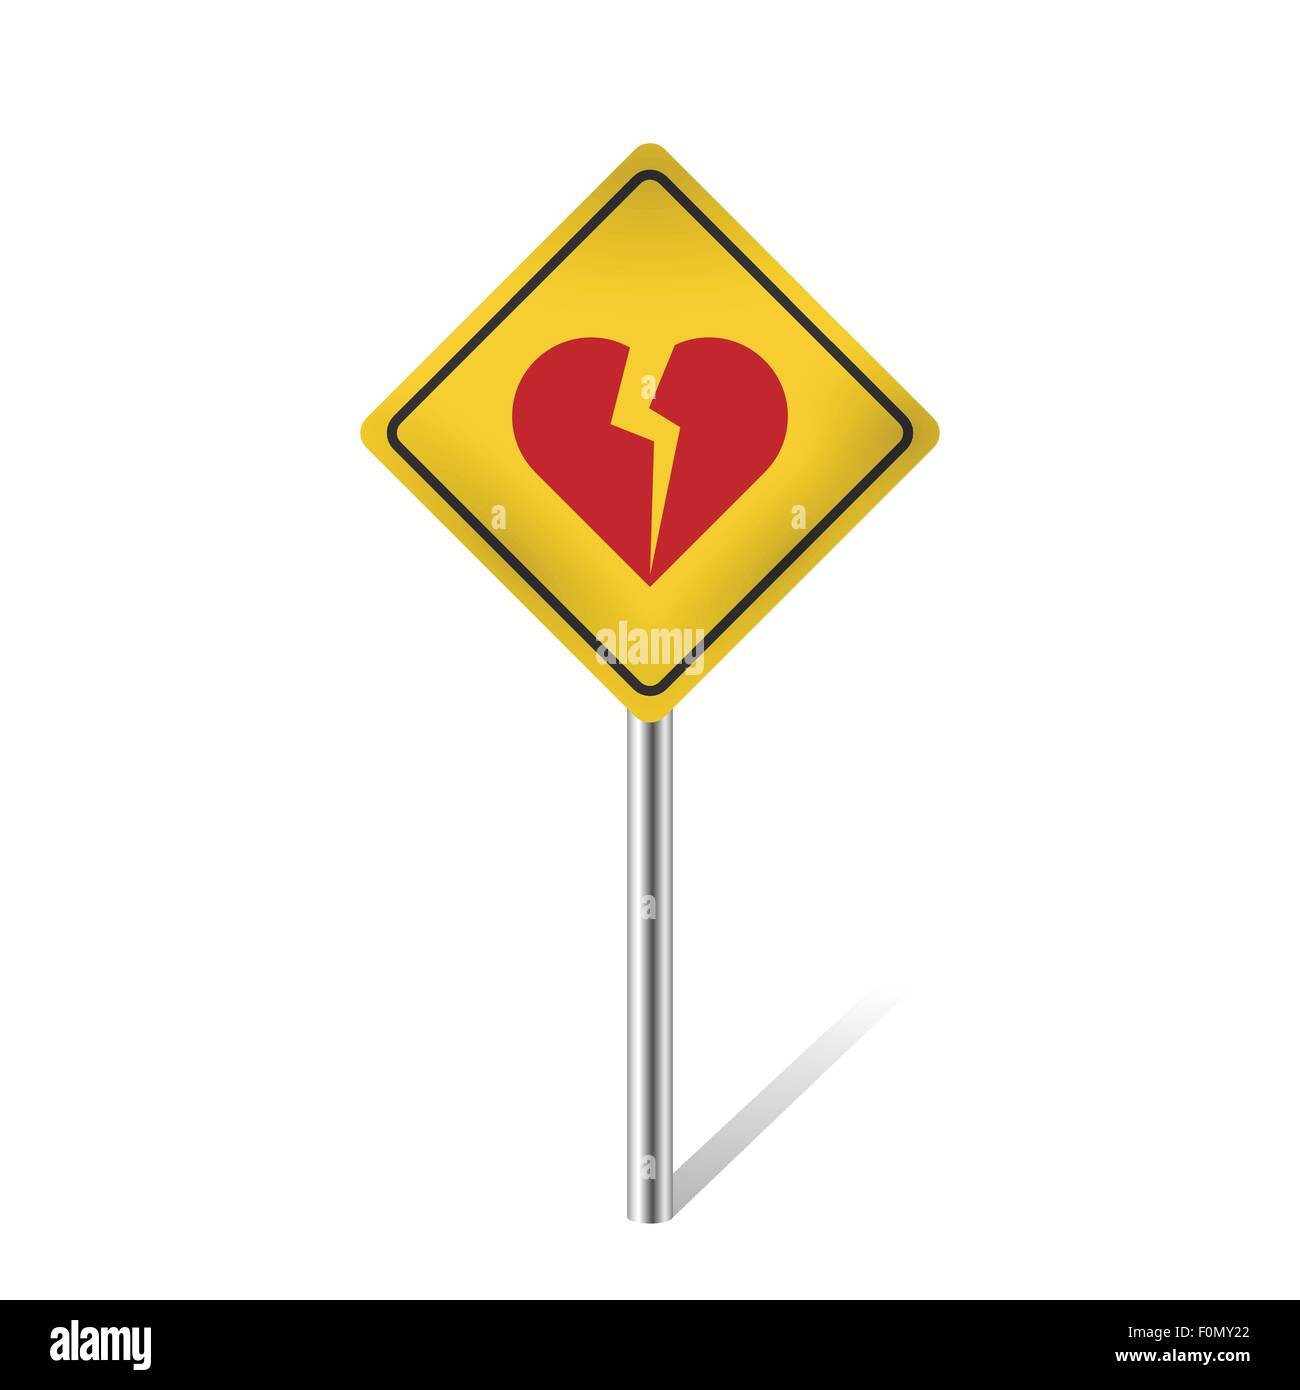 broken heart warning traffic sign isolated vector illustration Stock Vector